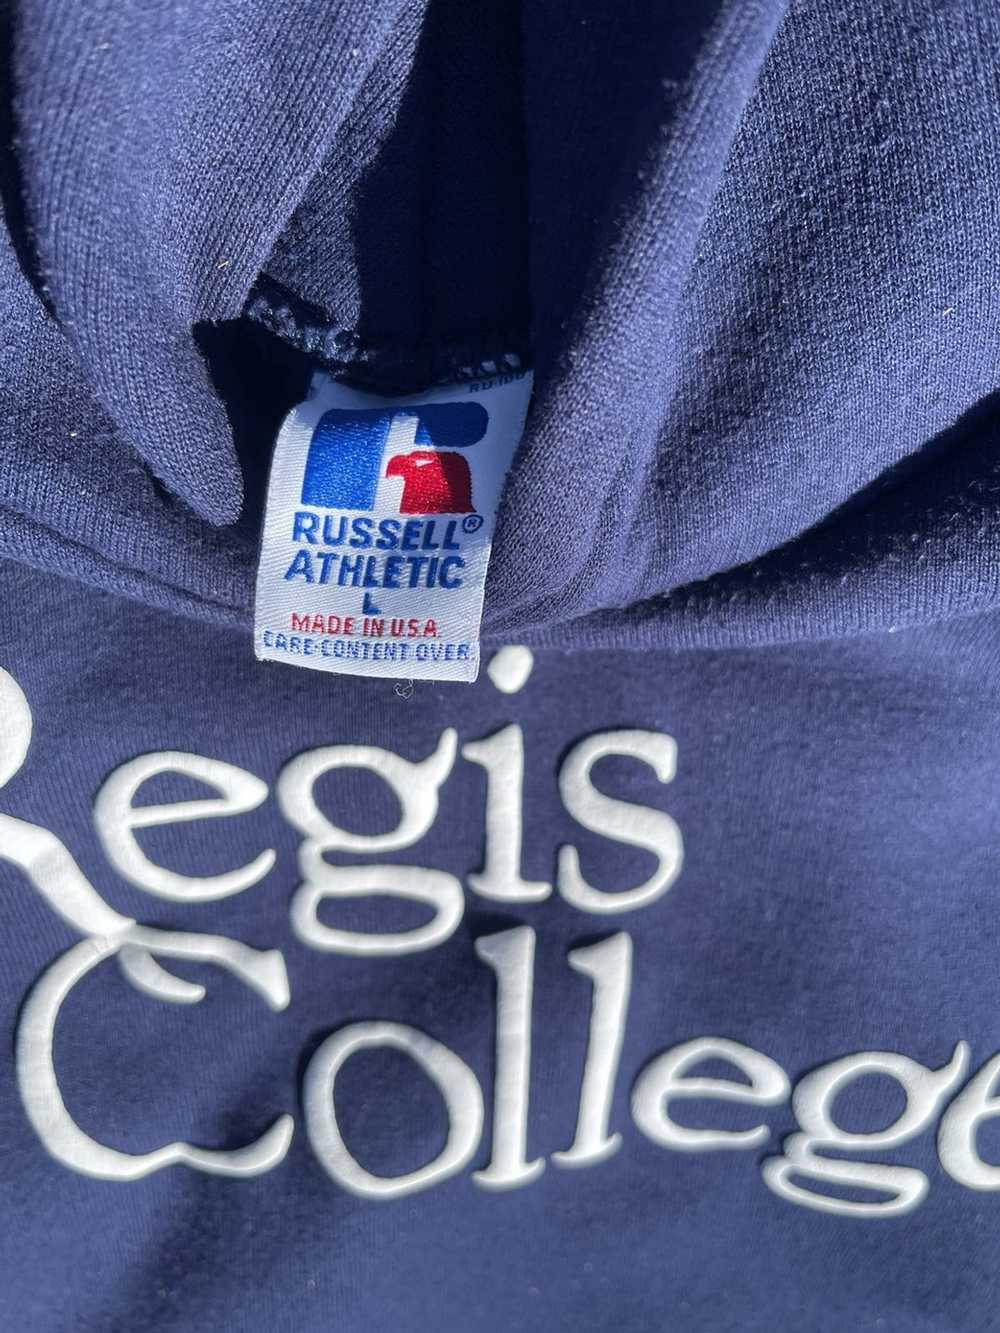 Russell Athletic Regis College Russell Hoodie - image 5